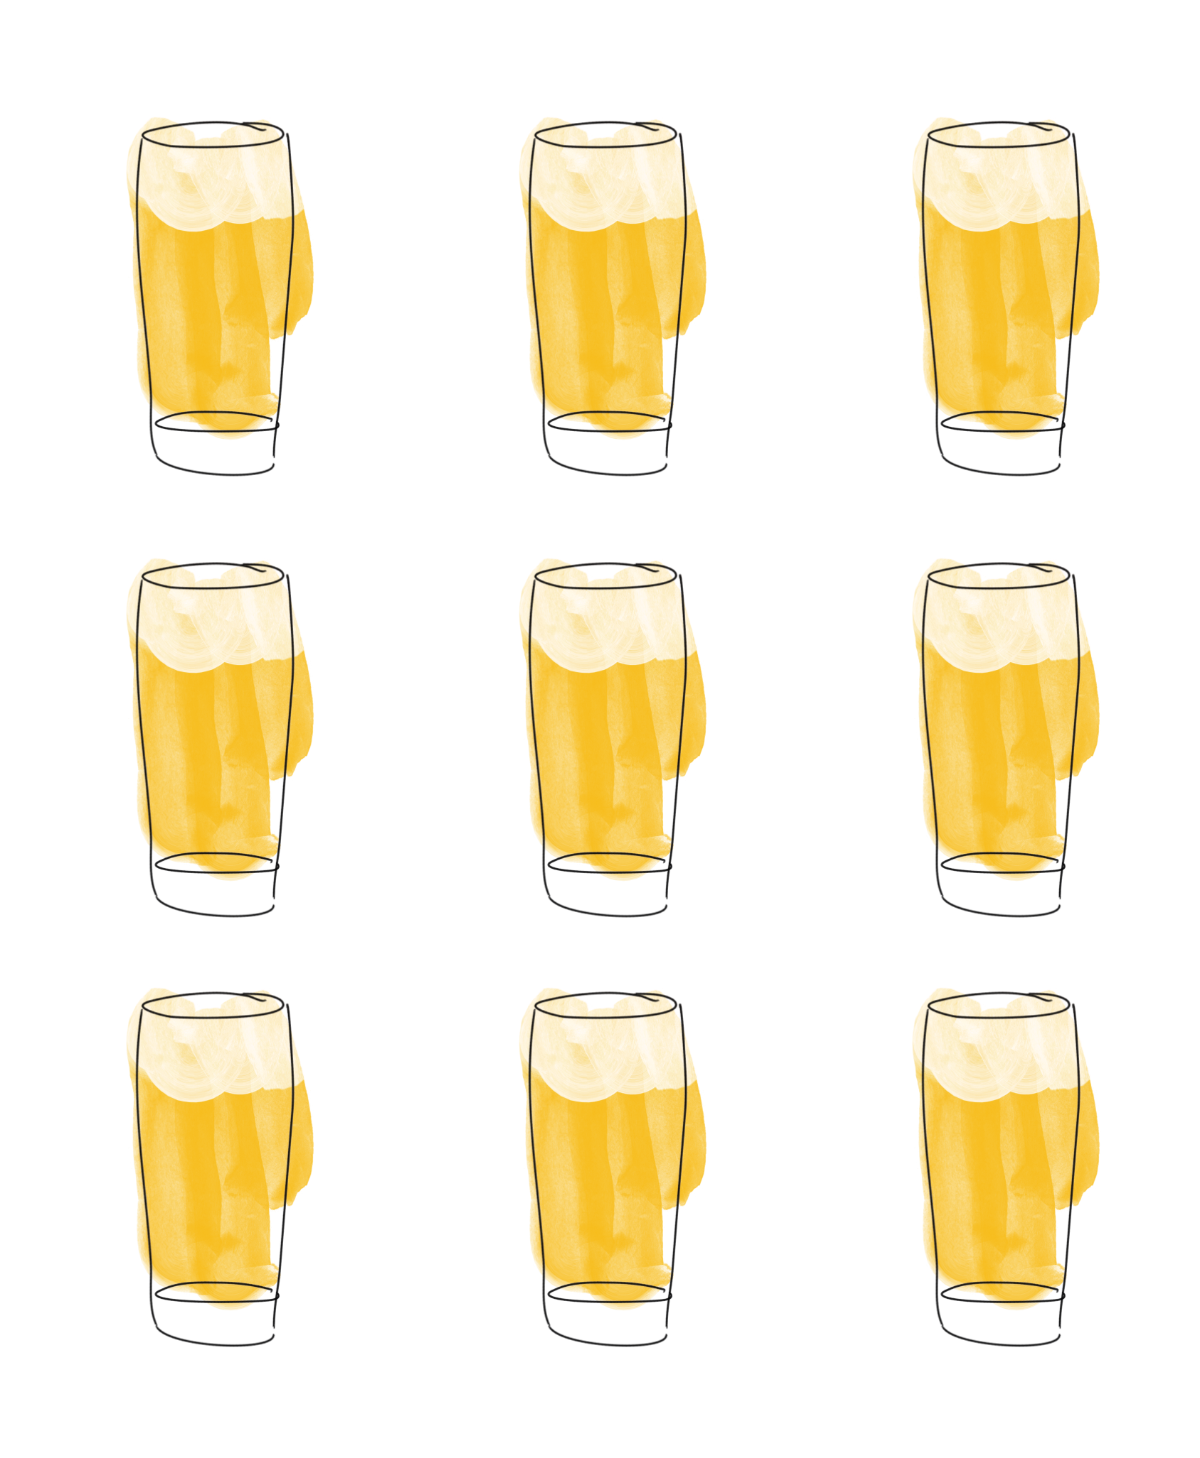 Die Bier